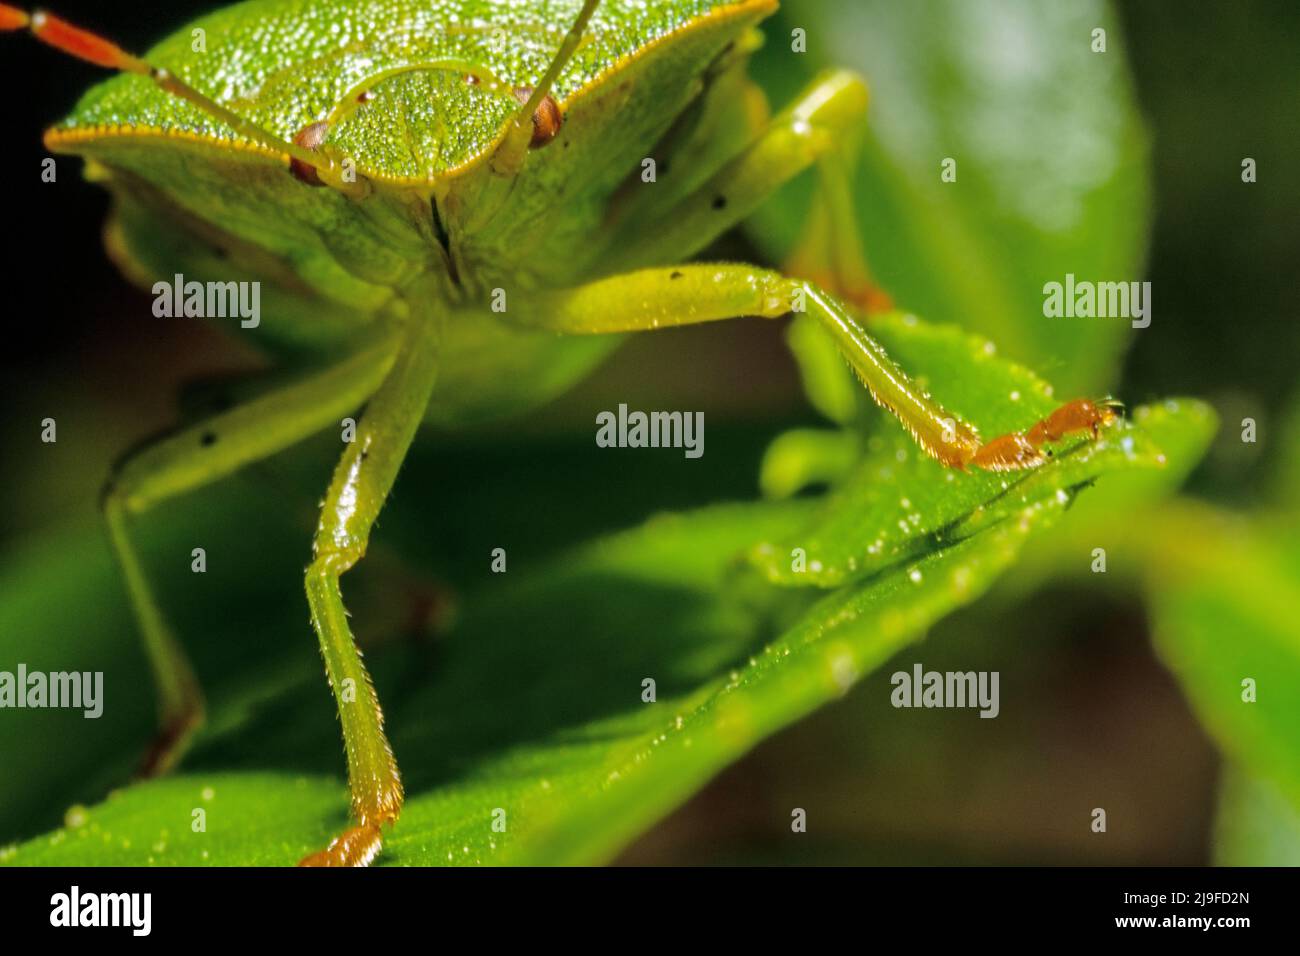 Détail d'un coléoptère vert de juin en mouvement avec des yeux rouges Banque D'Images